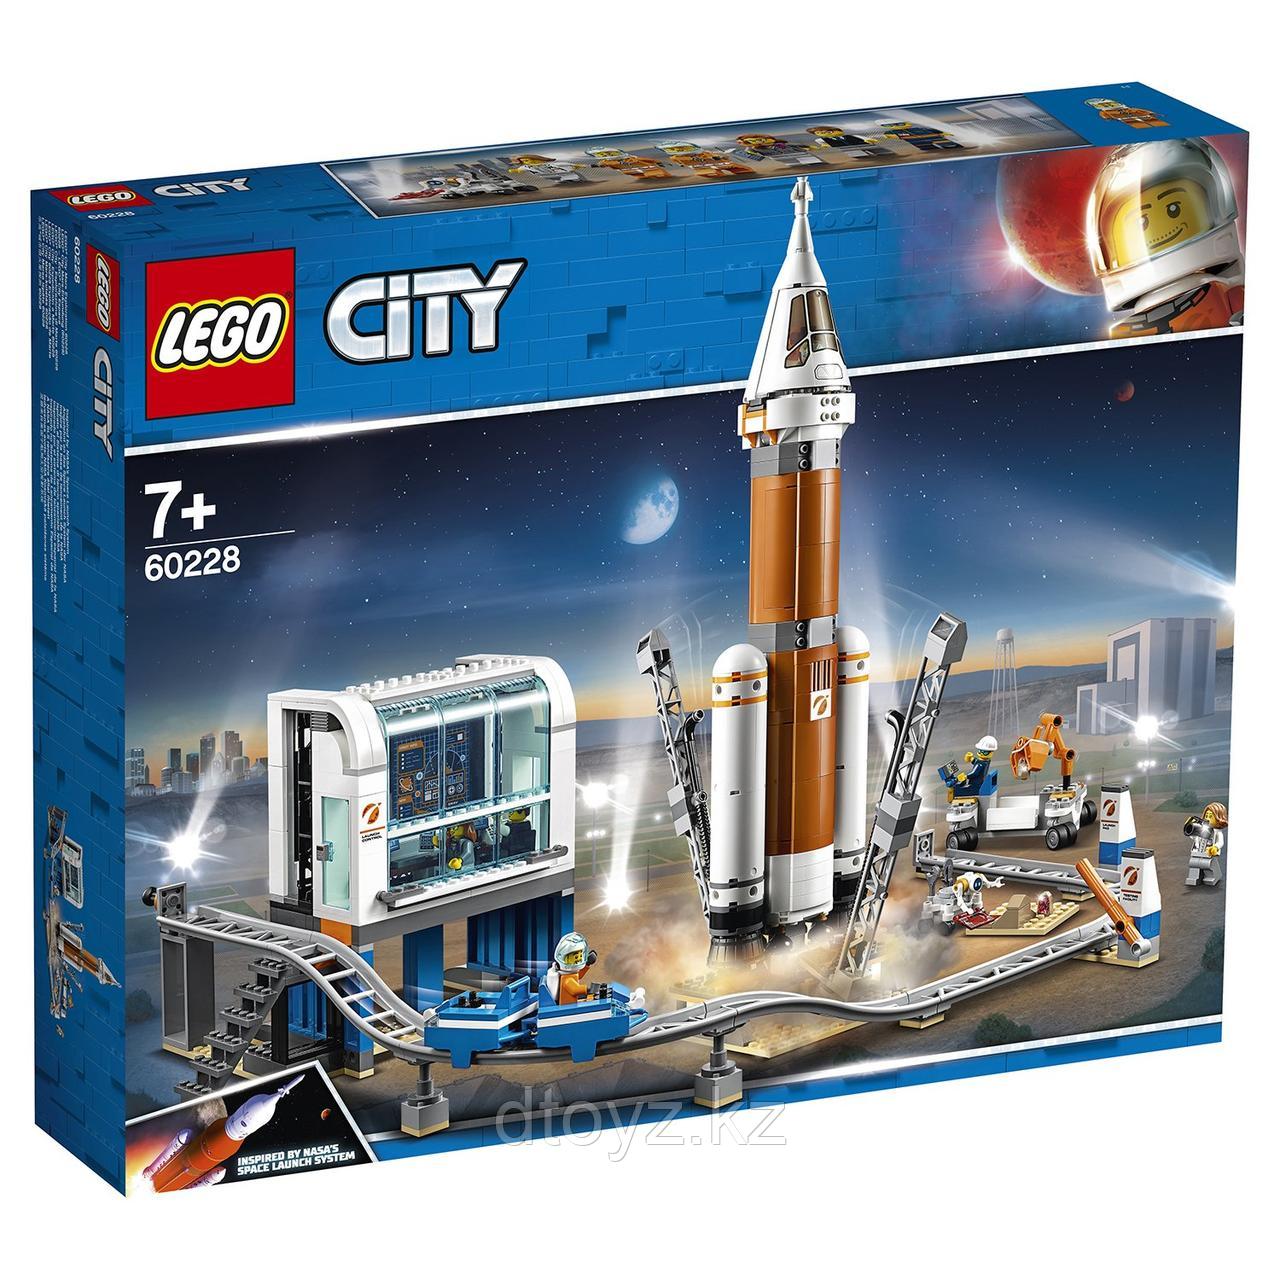 Lego City 60228 Ракета для запуска в далекий космос и пульт управления запуском, Лего Город Сити